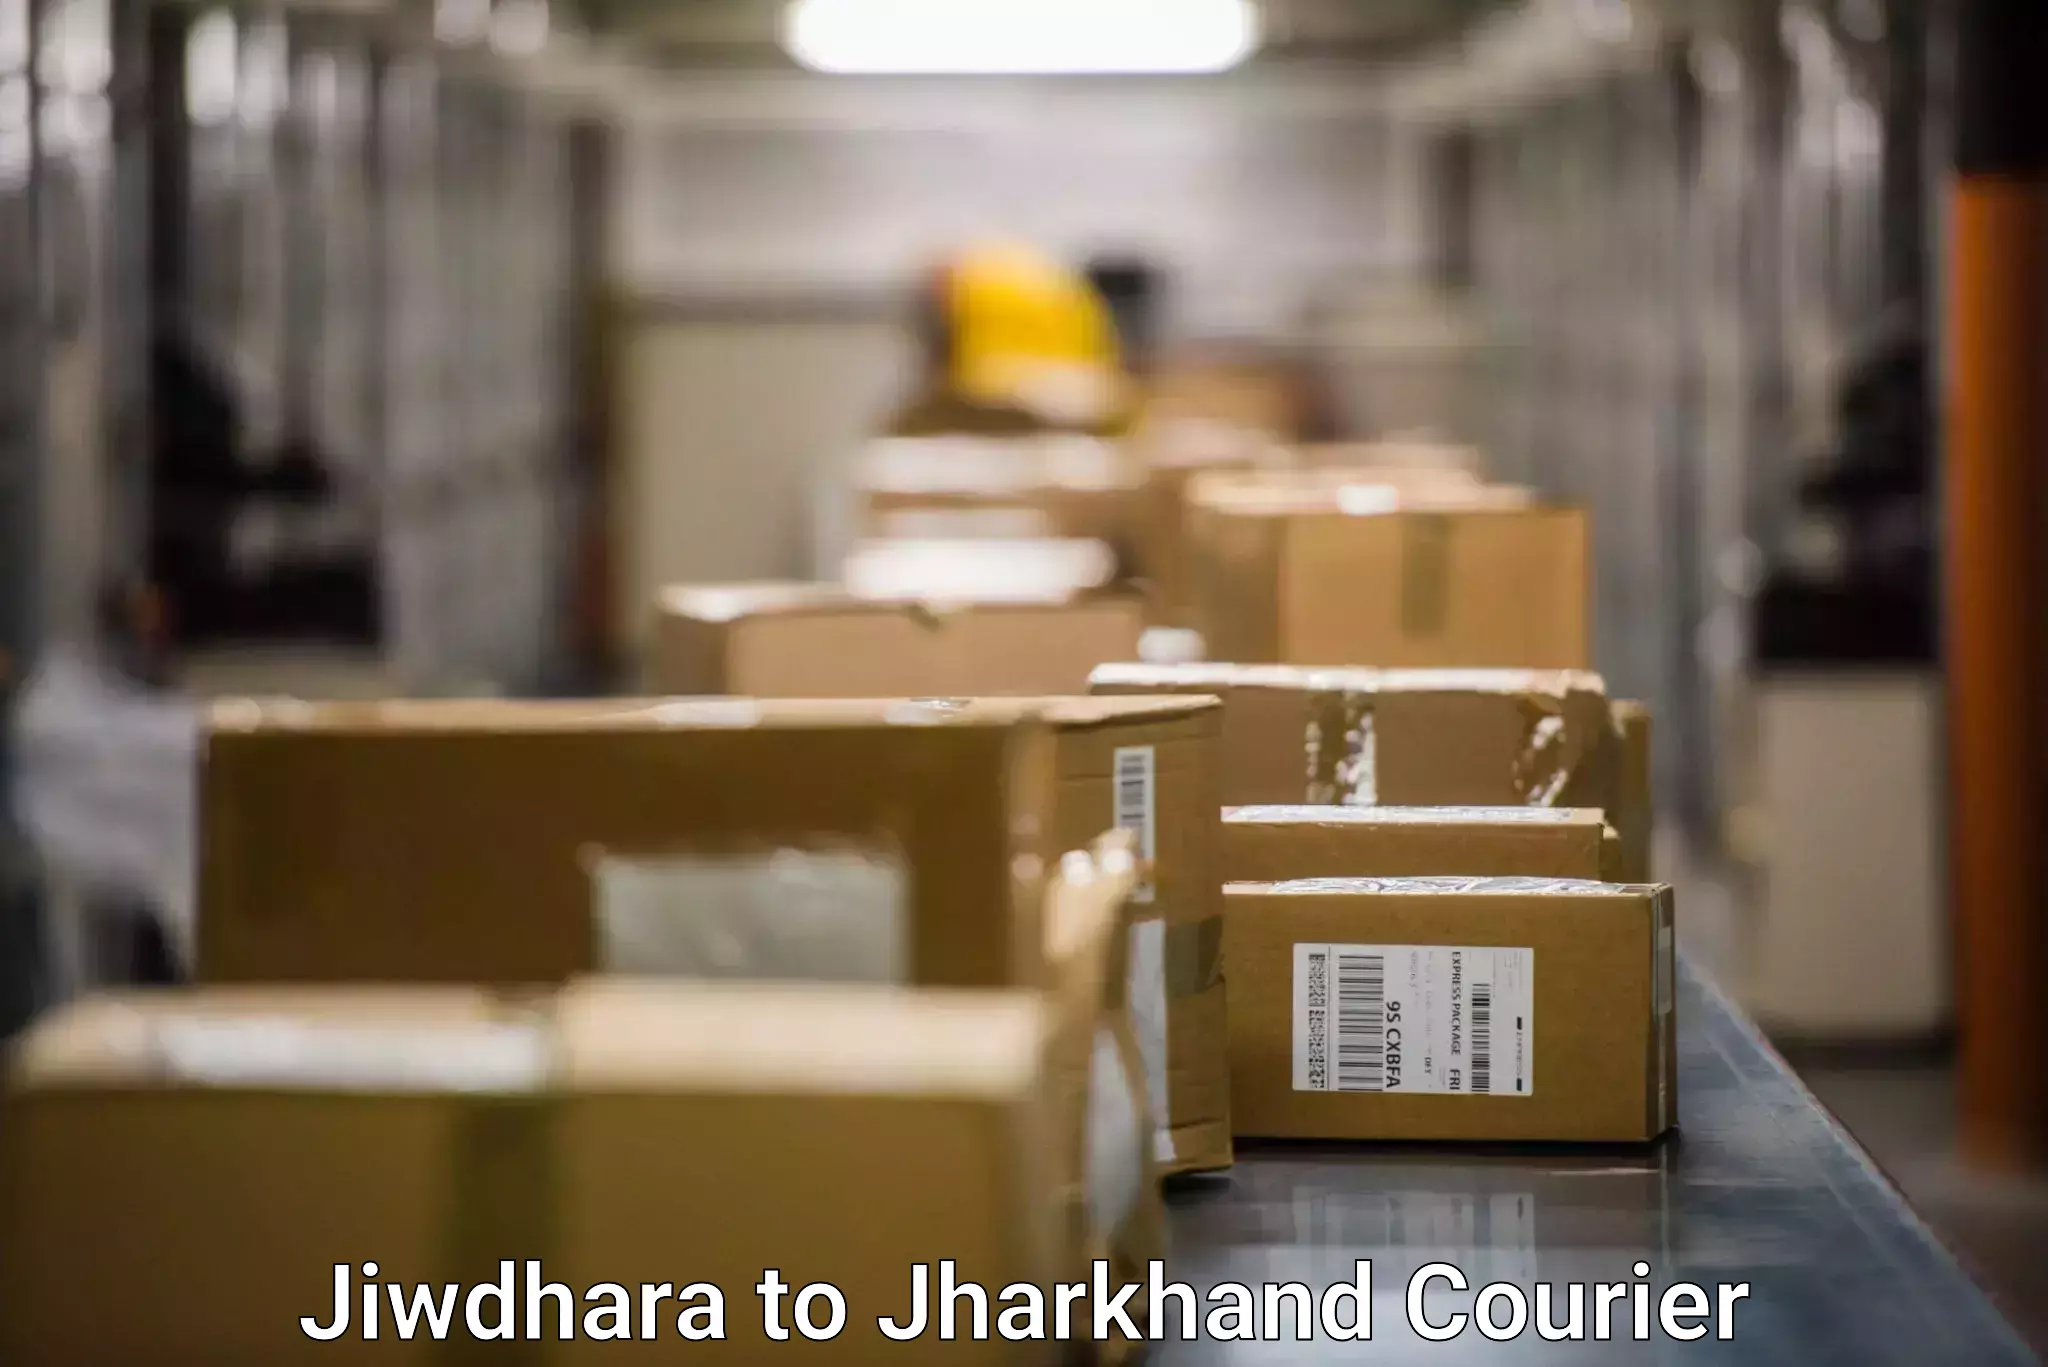 24-hour courier services Jiwdhara to Bagodar